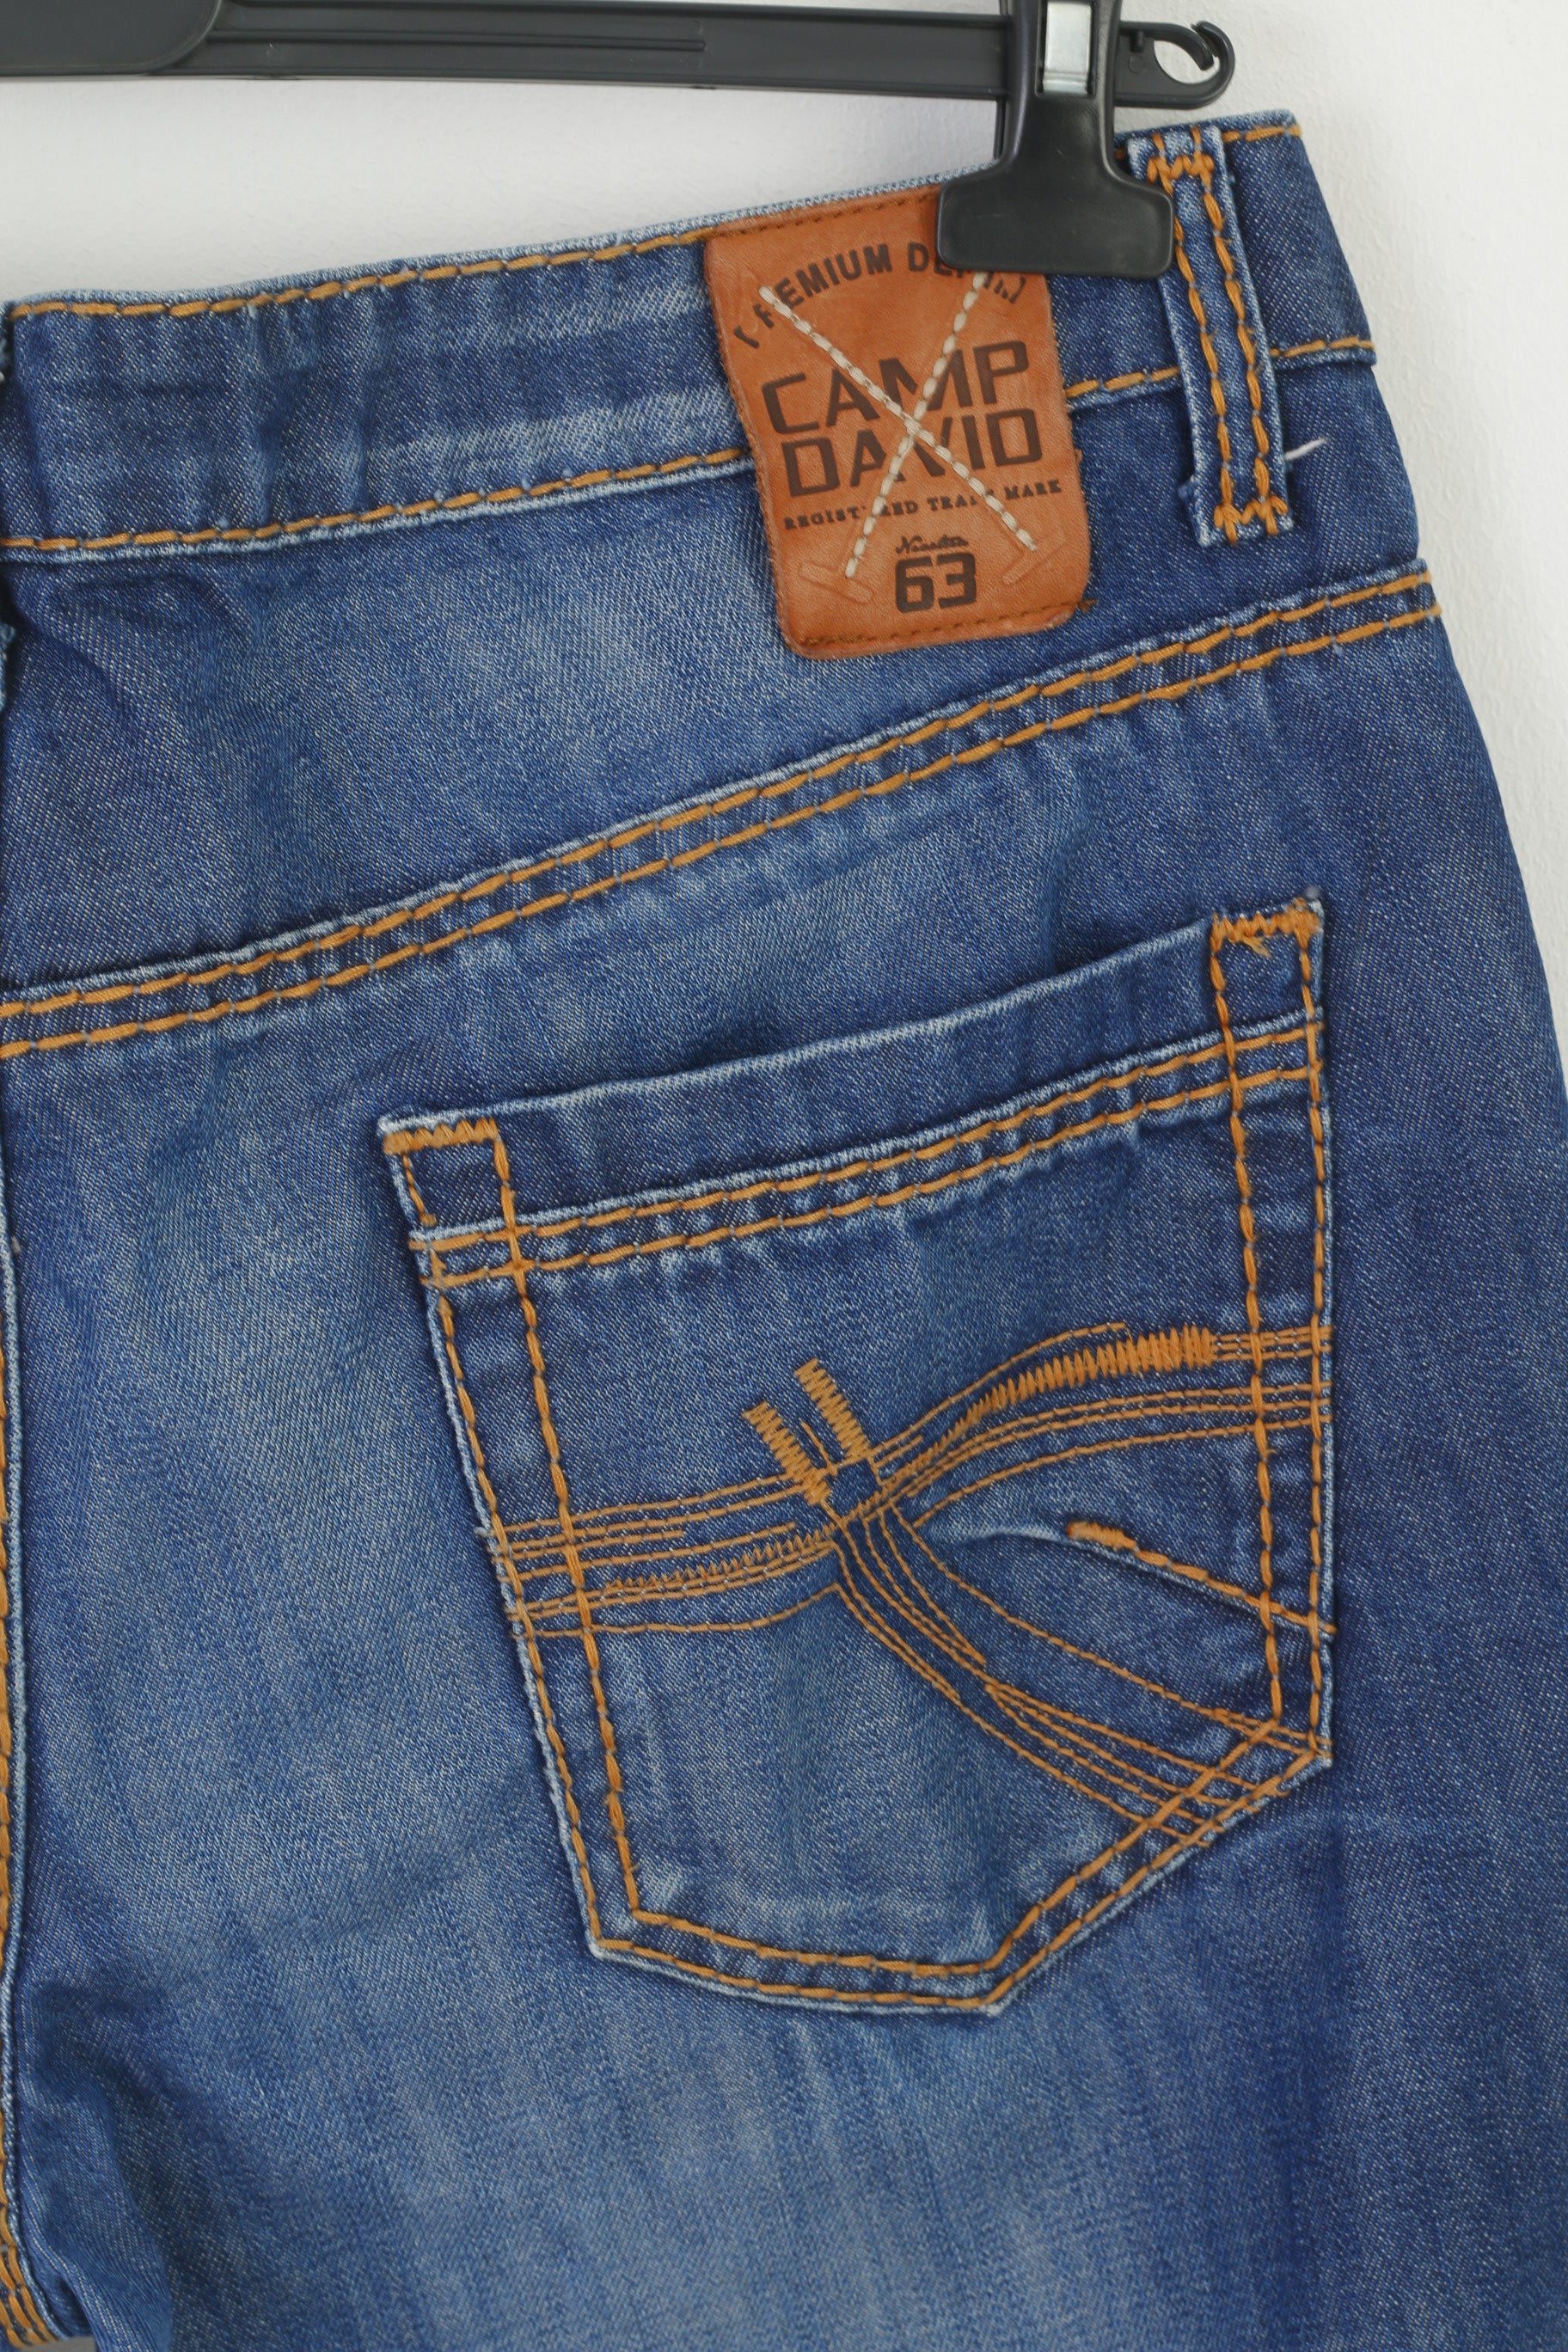 Camp David Men 36 Jeans Trousers Navy Denim Cotton Long Straight Leg P –  Retrospect Clothes